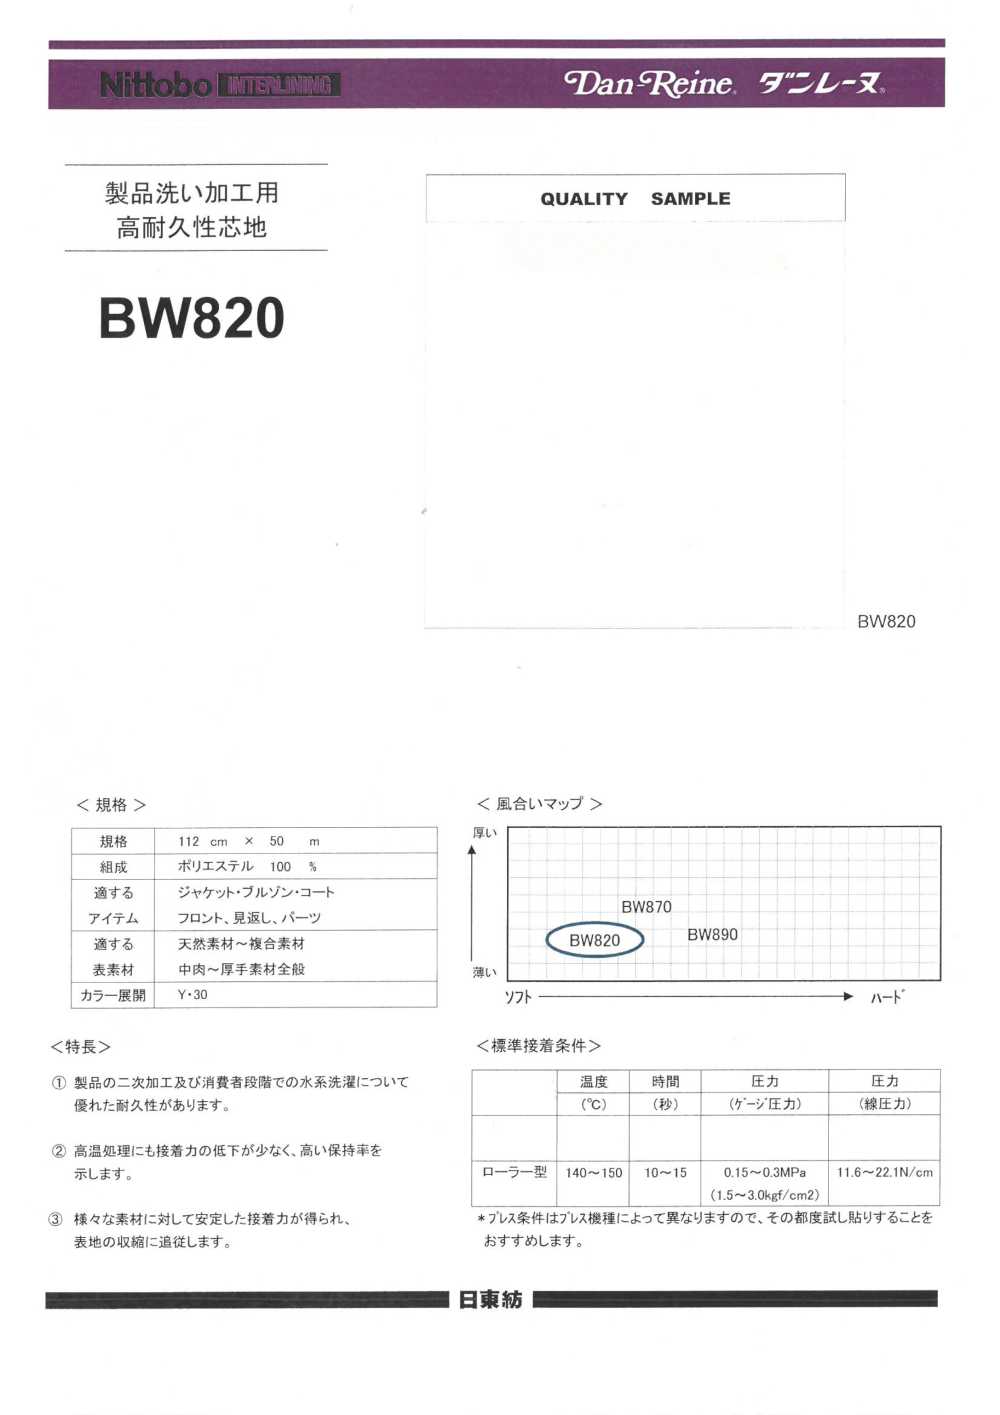 BW820 Lavaggio Del Prodotto Lavorazione/Lavaggio A Base D